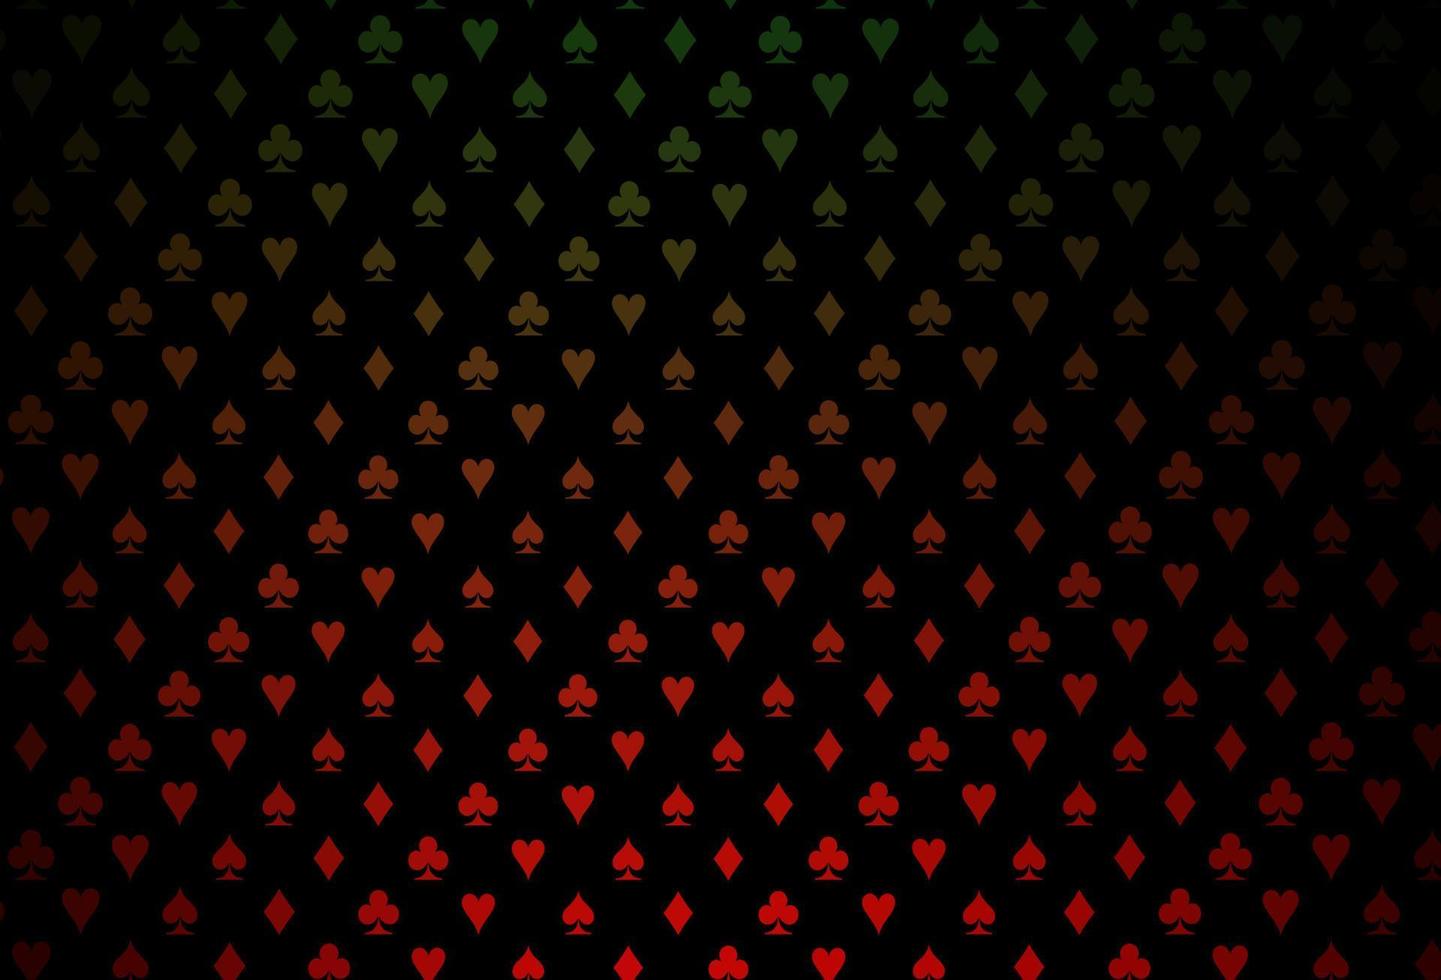 trama vettoriale verde scuro, rosso con carte da gioco.